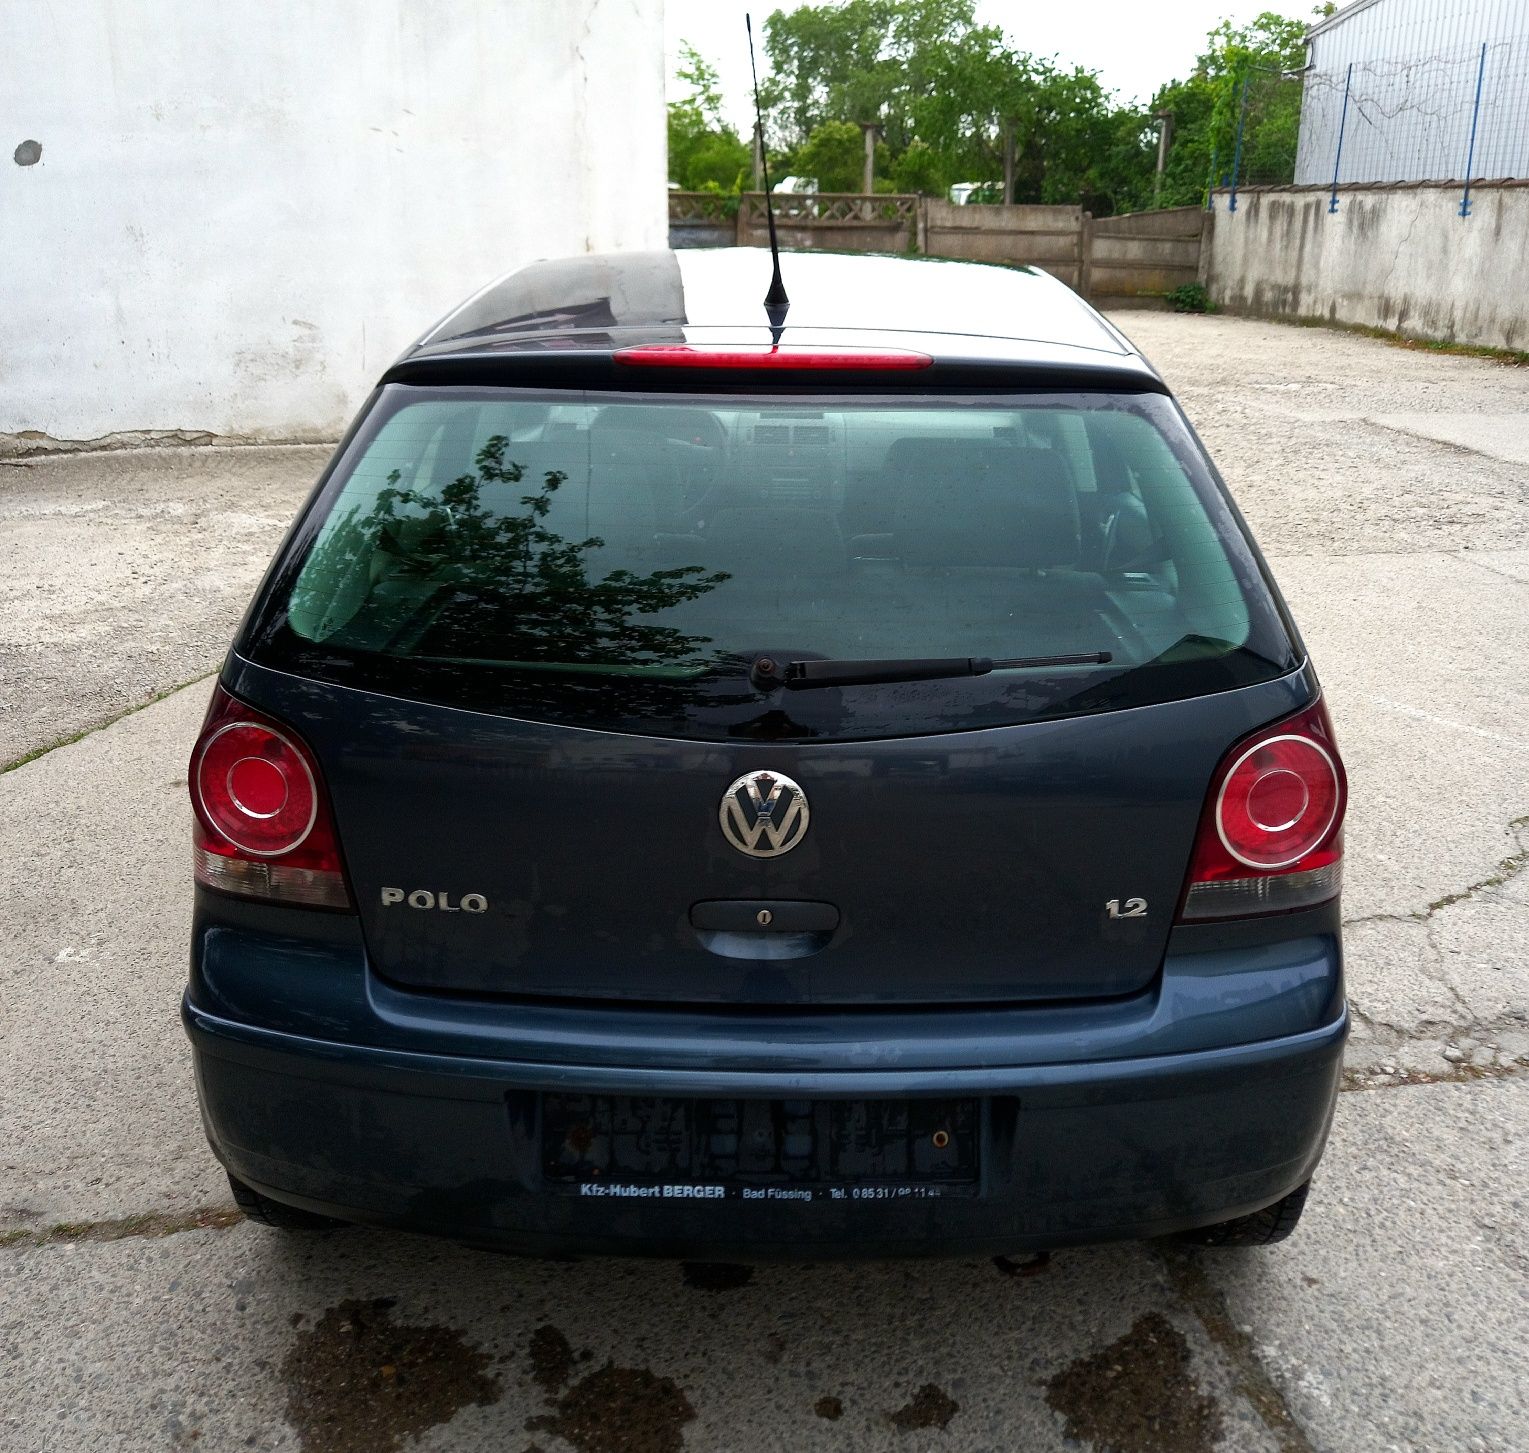 VW Polo 2008 benzina